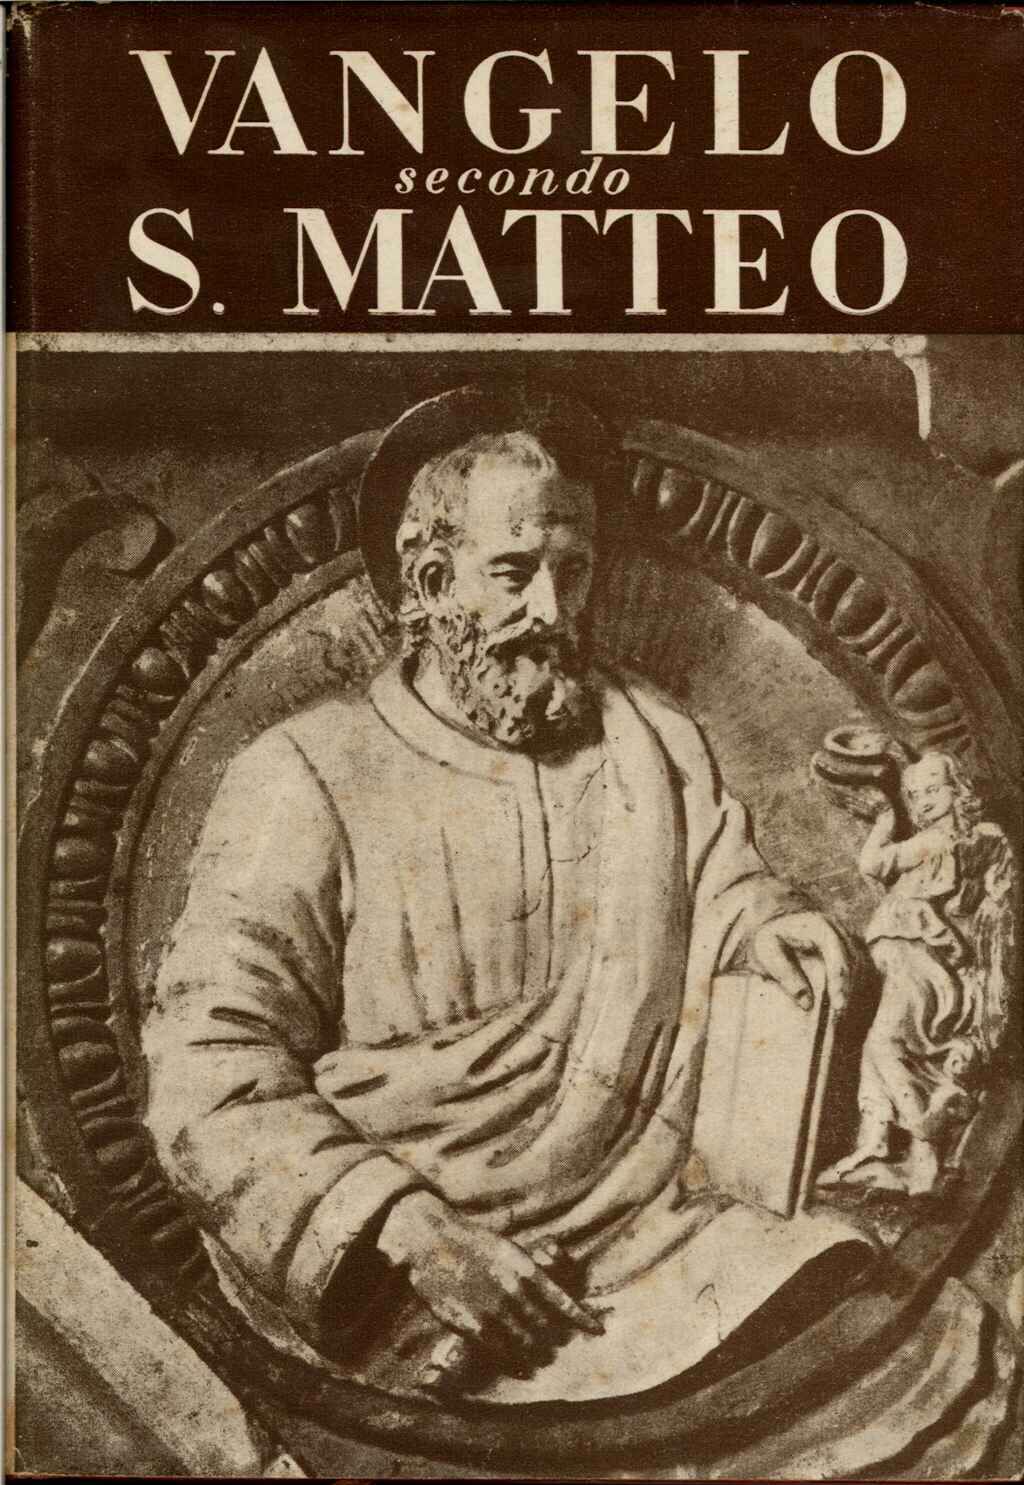 Vangelo secondo S. Matteo